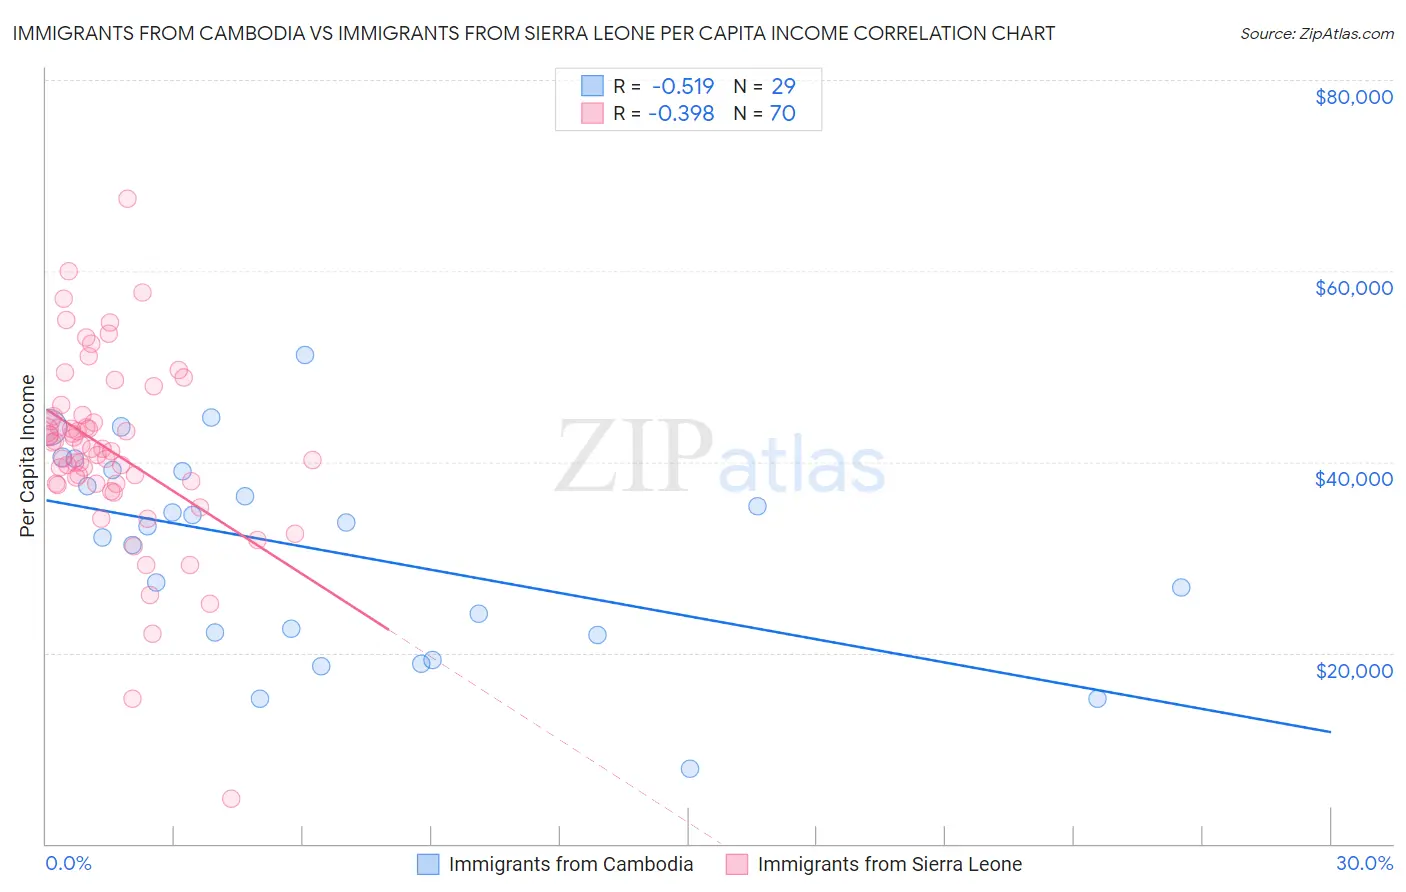 Immigrants from Cambodia vs Immigrants from Sierra Leone Per Capita Income